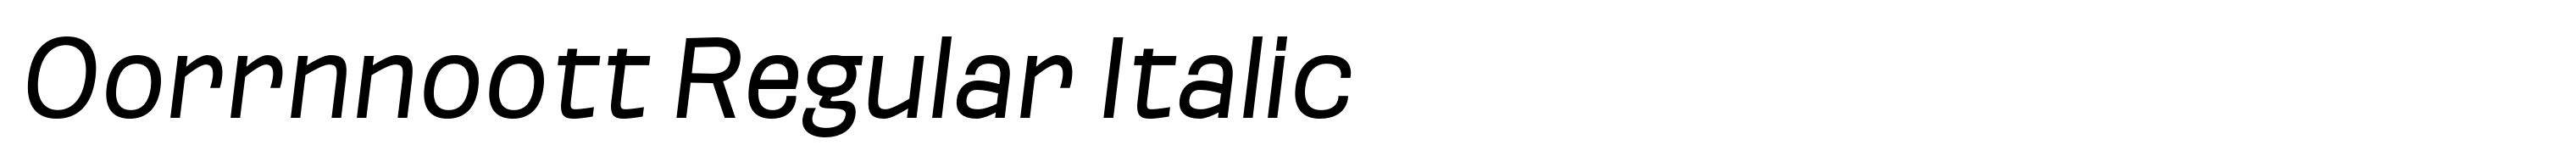 Oorrnnoott Regular Italic